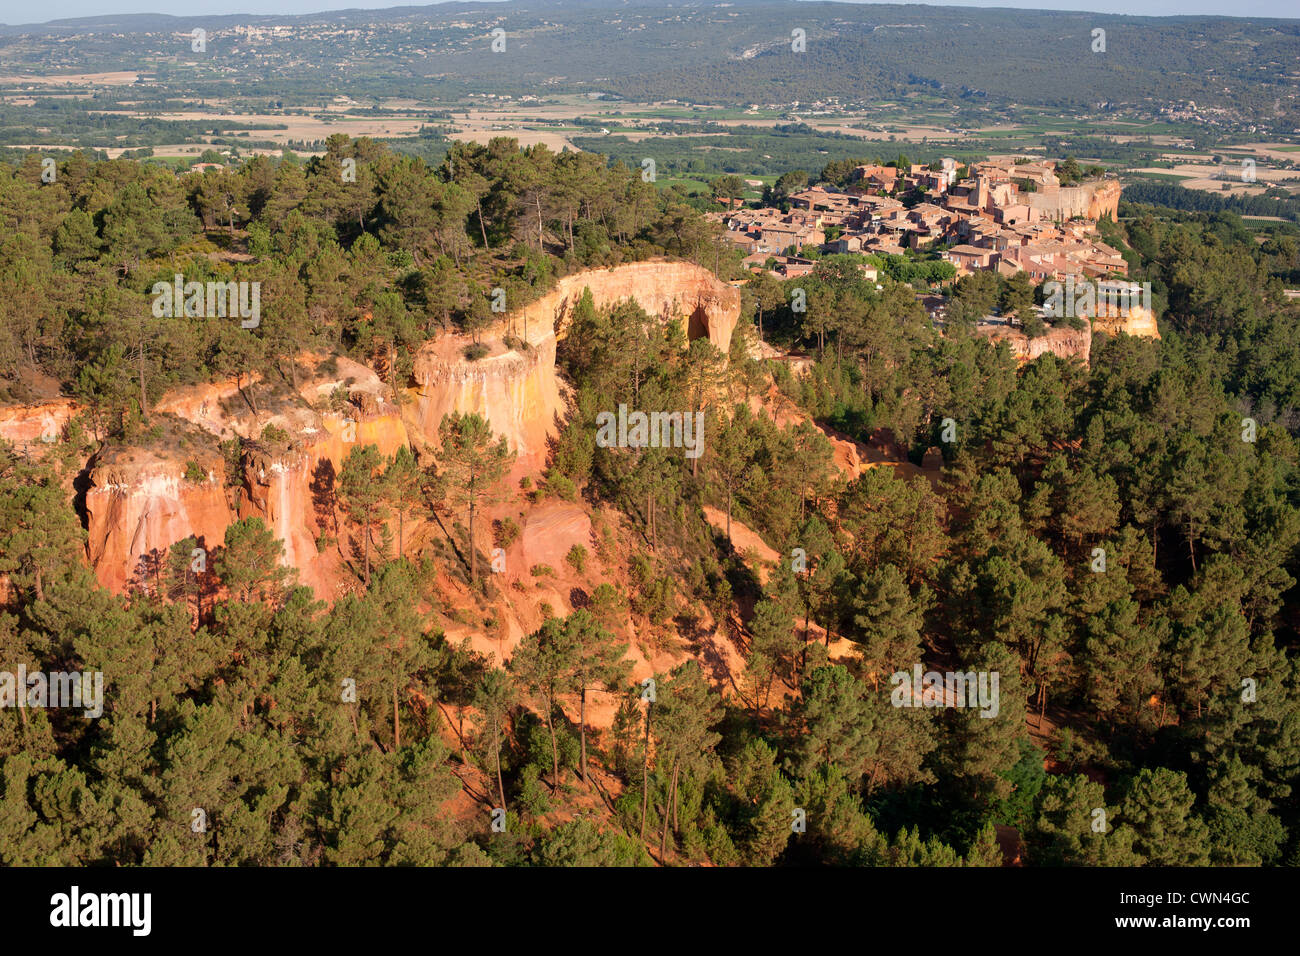 LUFTAUFNAHME. Mittelalterliches Dorf auf einer rot-ockerfarbenen Lehmklippe. Roussillon, Vaucluse, Provence, Frankreich. Stockfoto